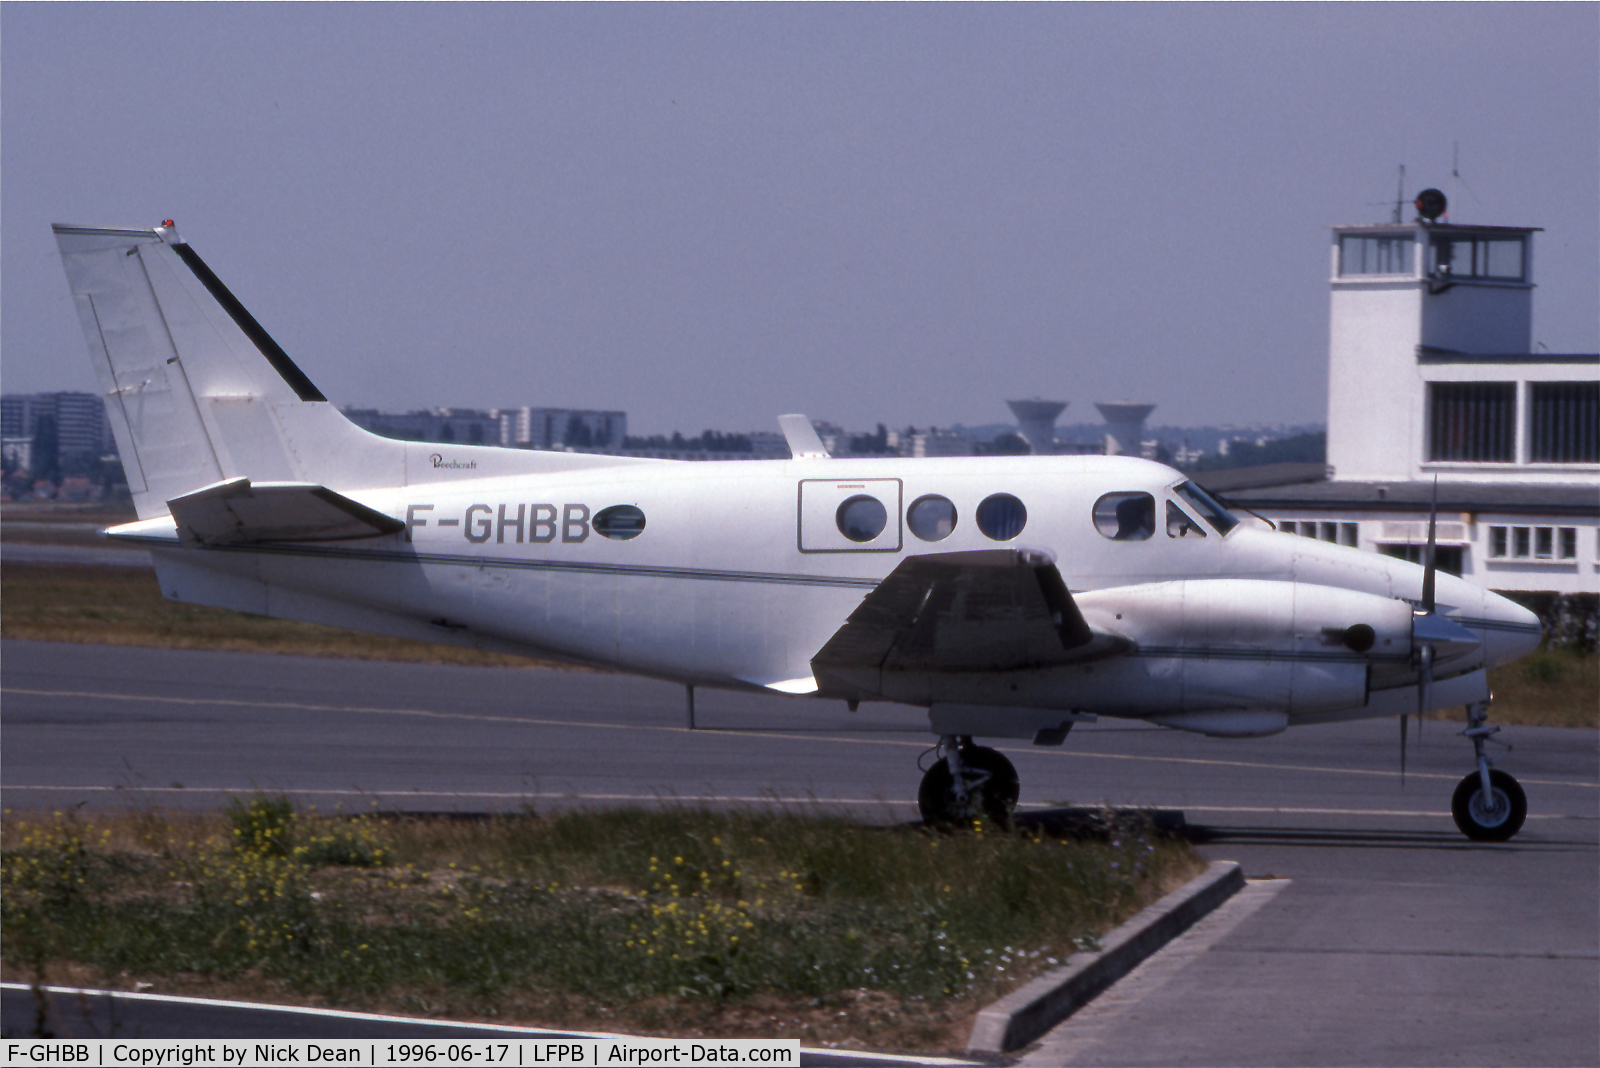 F-GHBB, 1971 Beech C90 King Air C/N LJ-510, A King air